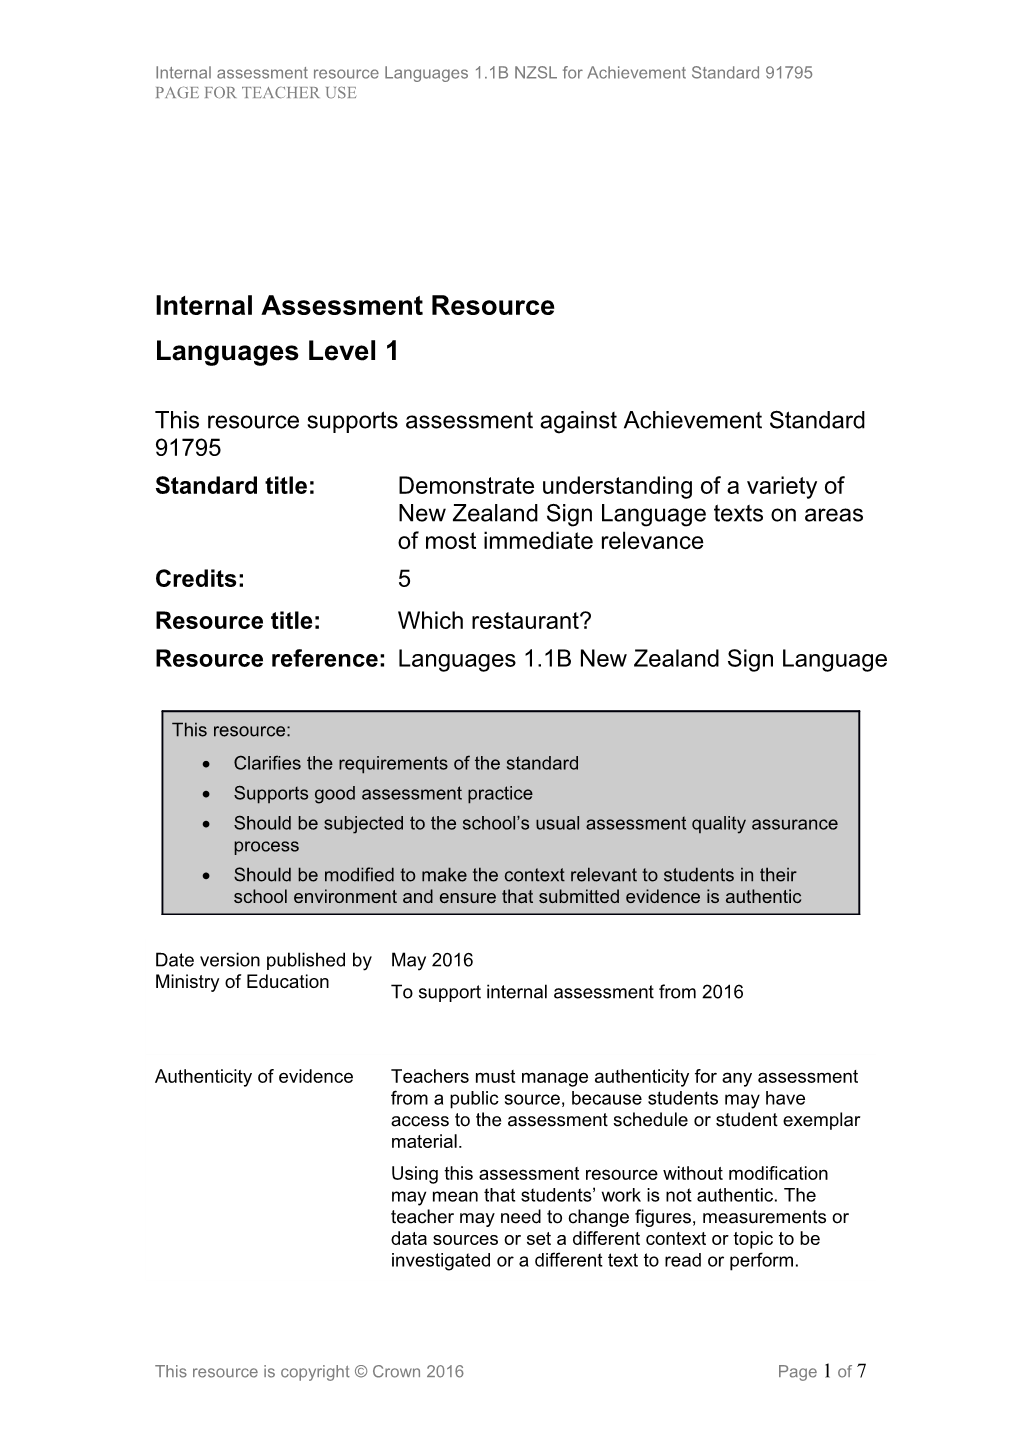 Level 1 Languages NZSL Internal Assessment Resource